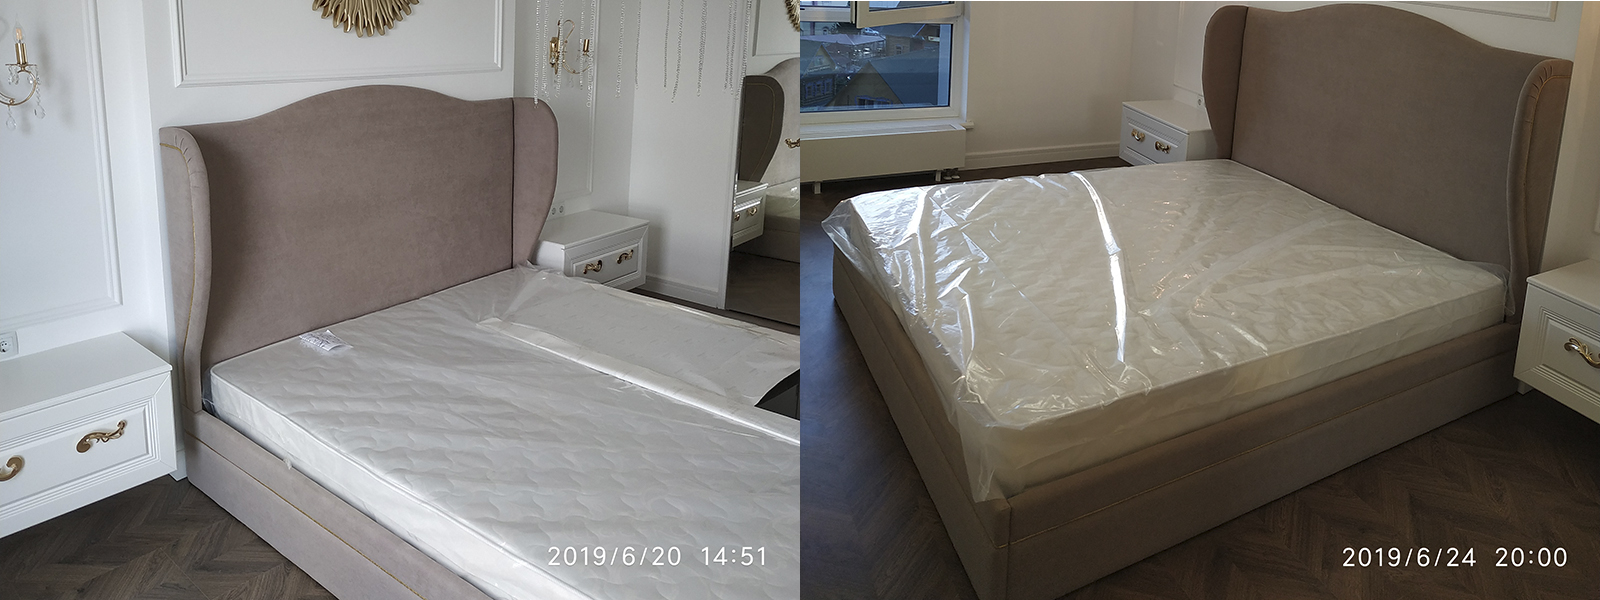 Обтяжка кровати в Краснодаре - разумная стоимость, расчет по фото, высокое качество работы